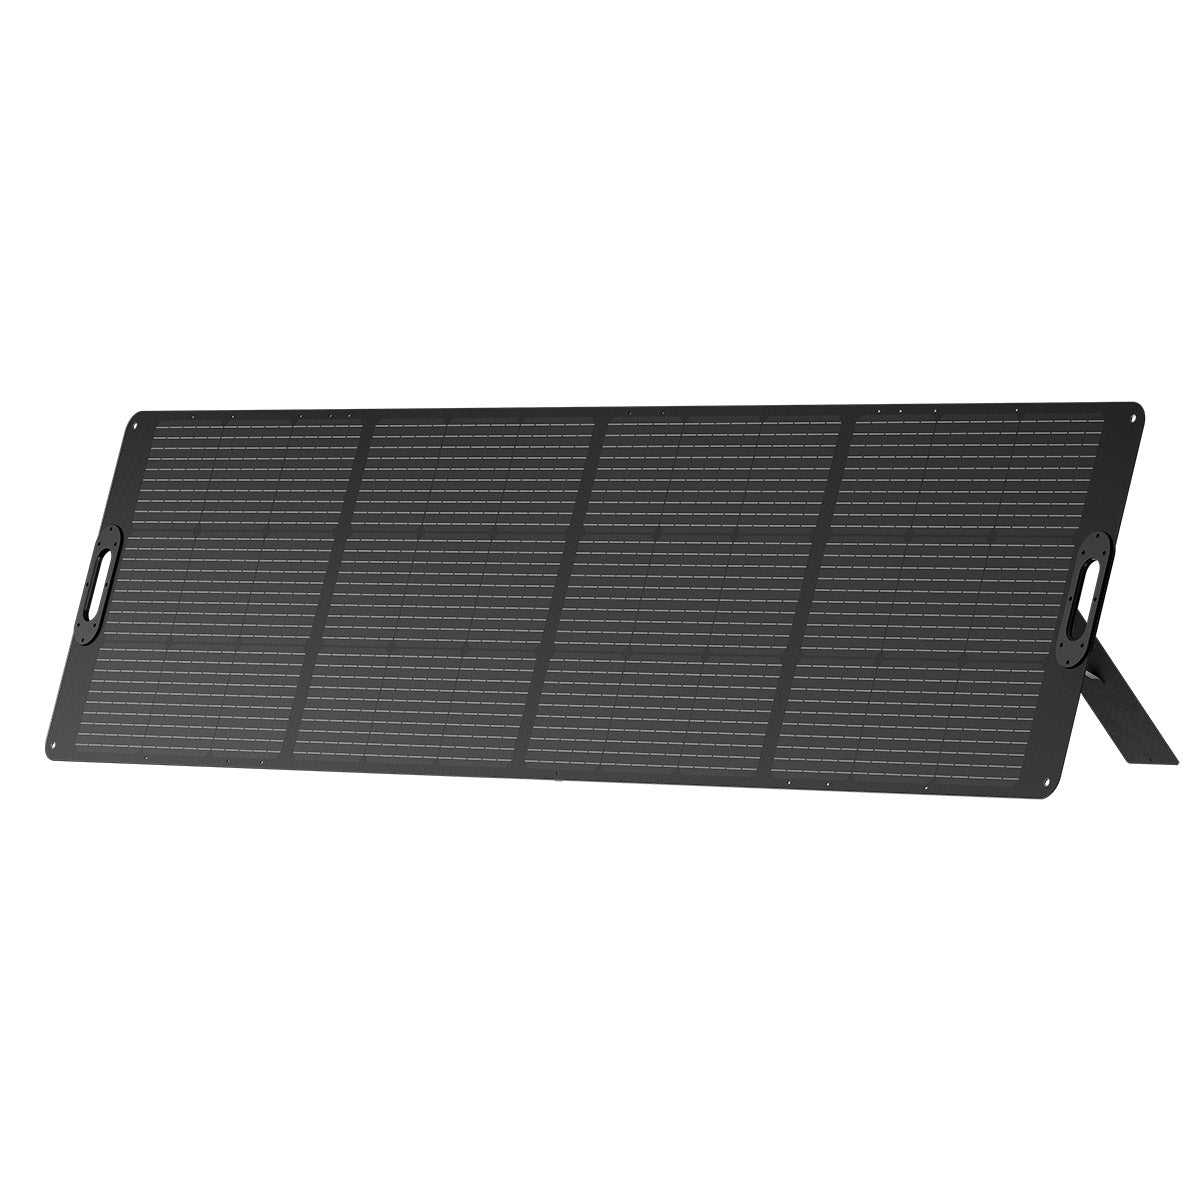 Mega 5 + B5 Extra Battery + 6*240W Solar Panel | Solar Generator Kit